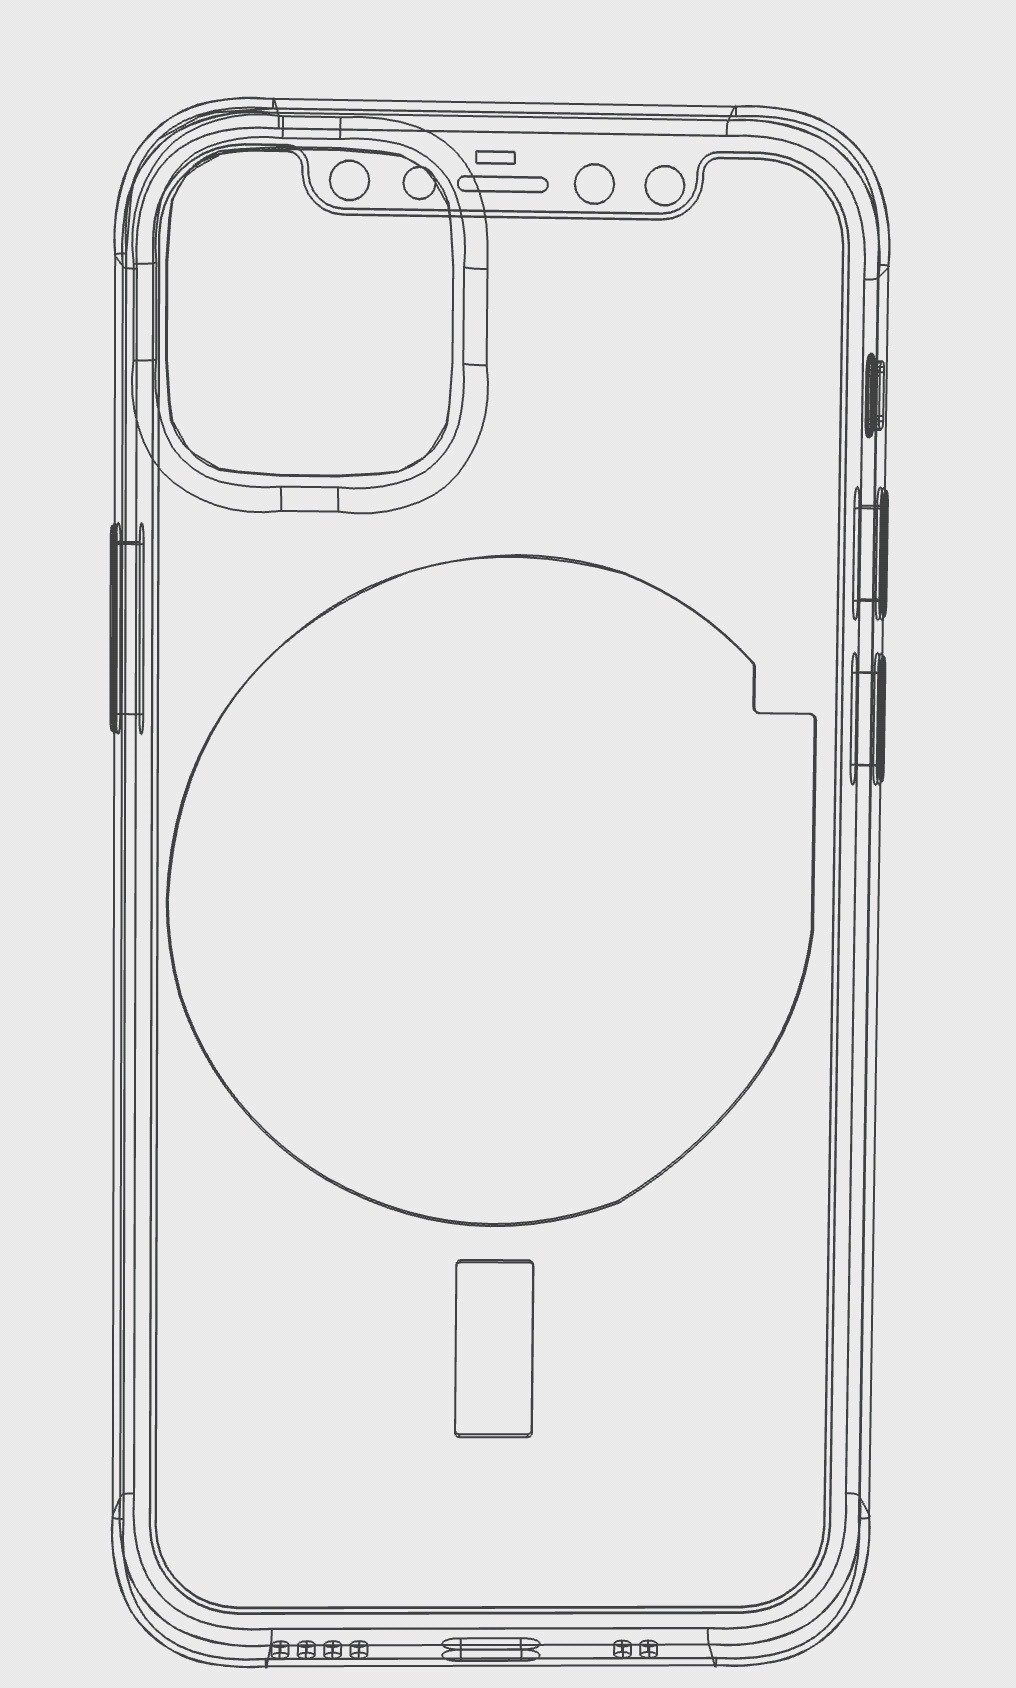 Apple đang có kế hoạch tạo thương hiệu MagSafe cho ốp lưng iPhone và sạc không dây